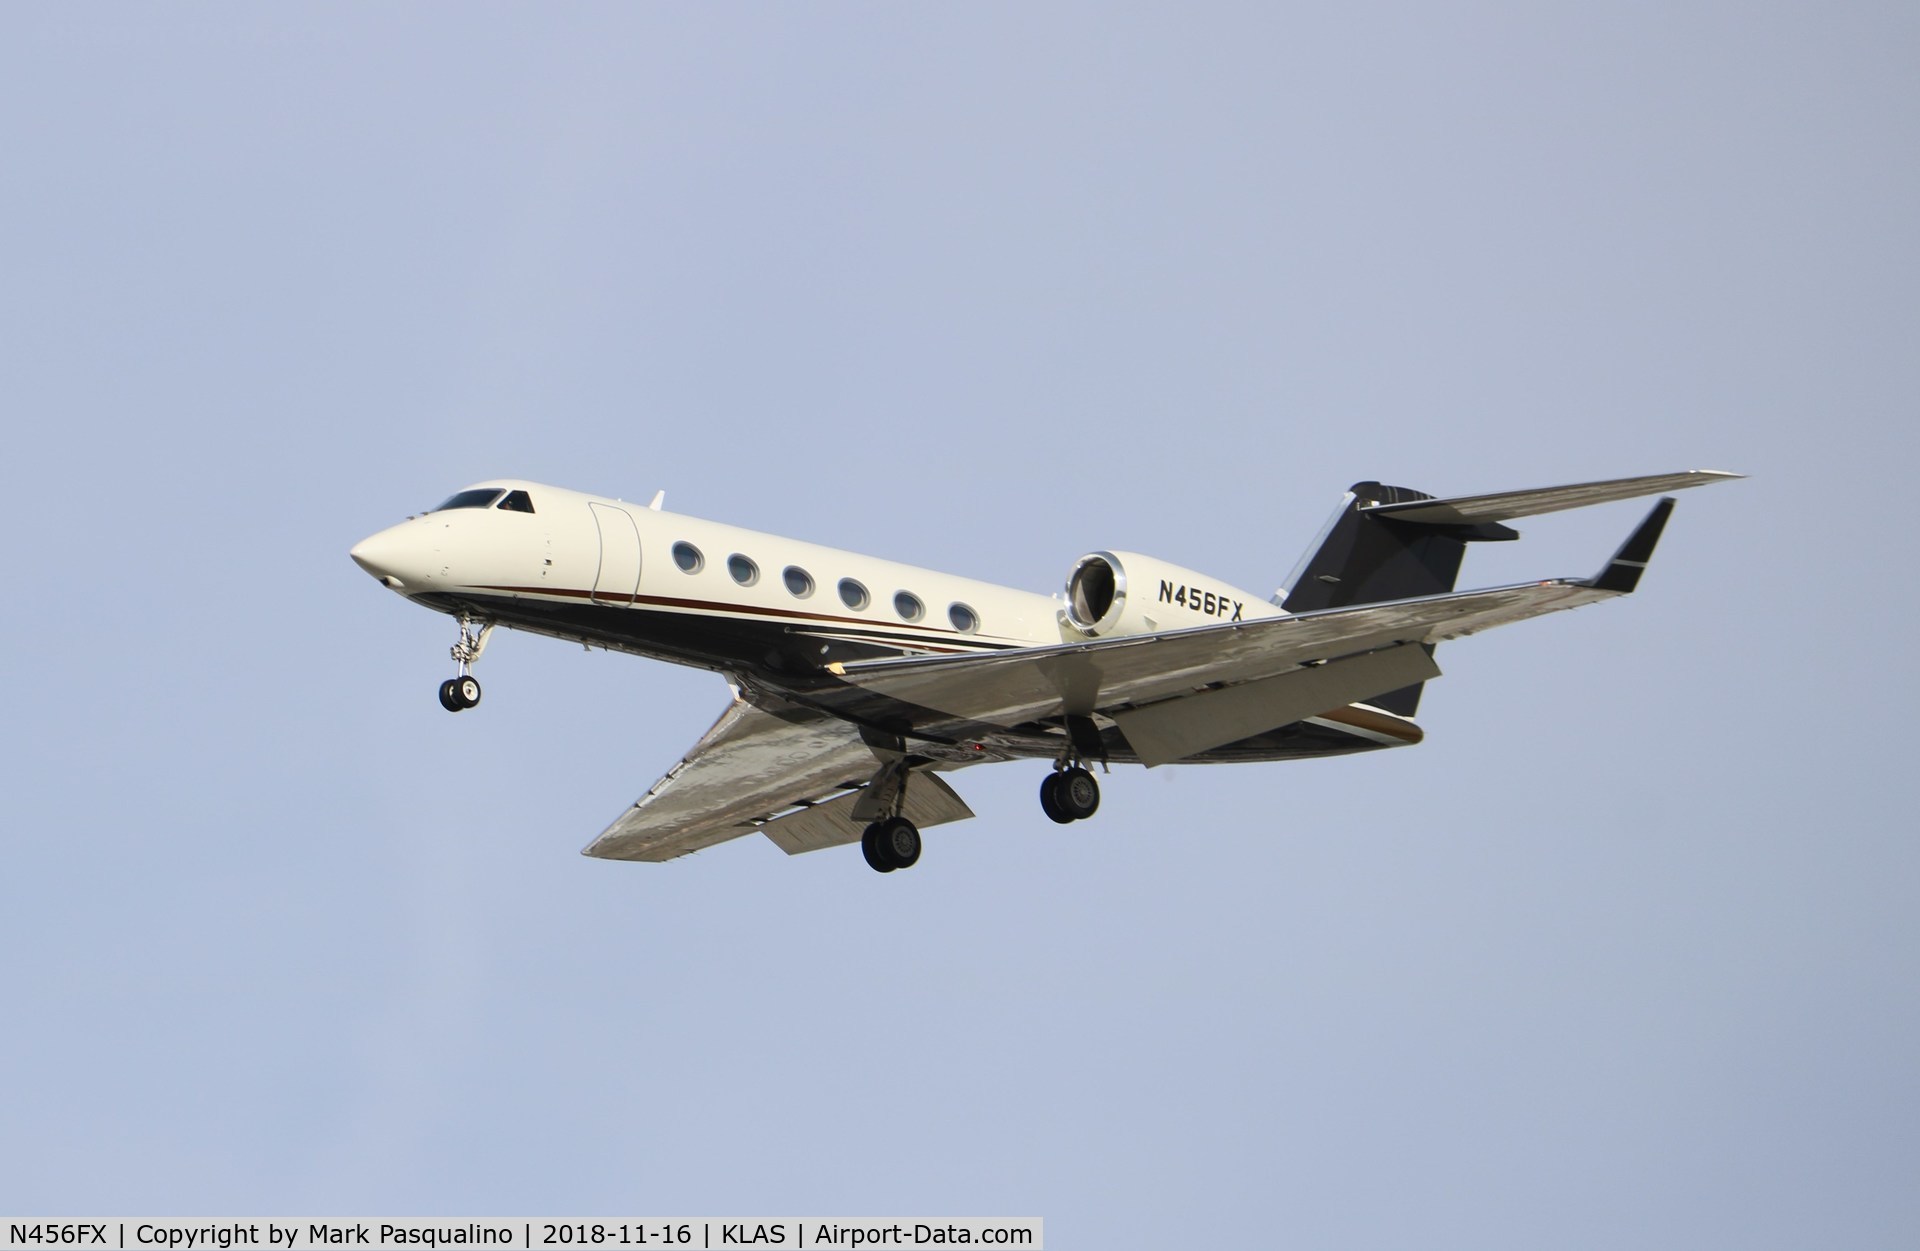 N456FX, 2008 Gulfstream Aerospace GIV-X (450) C/N 4132, GulfsTream GIV-X